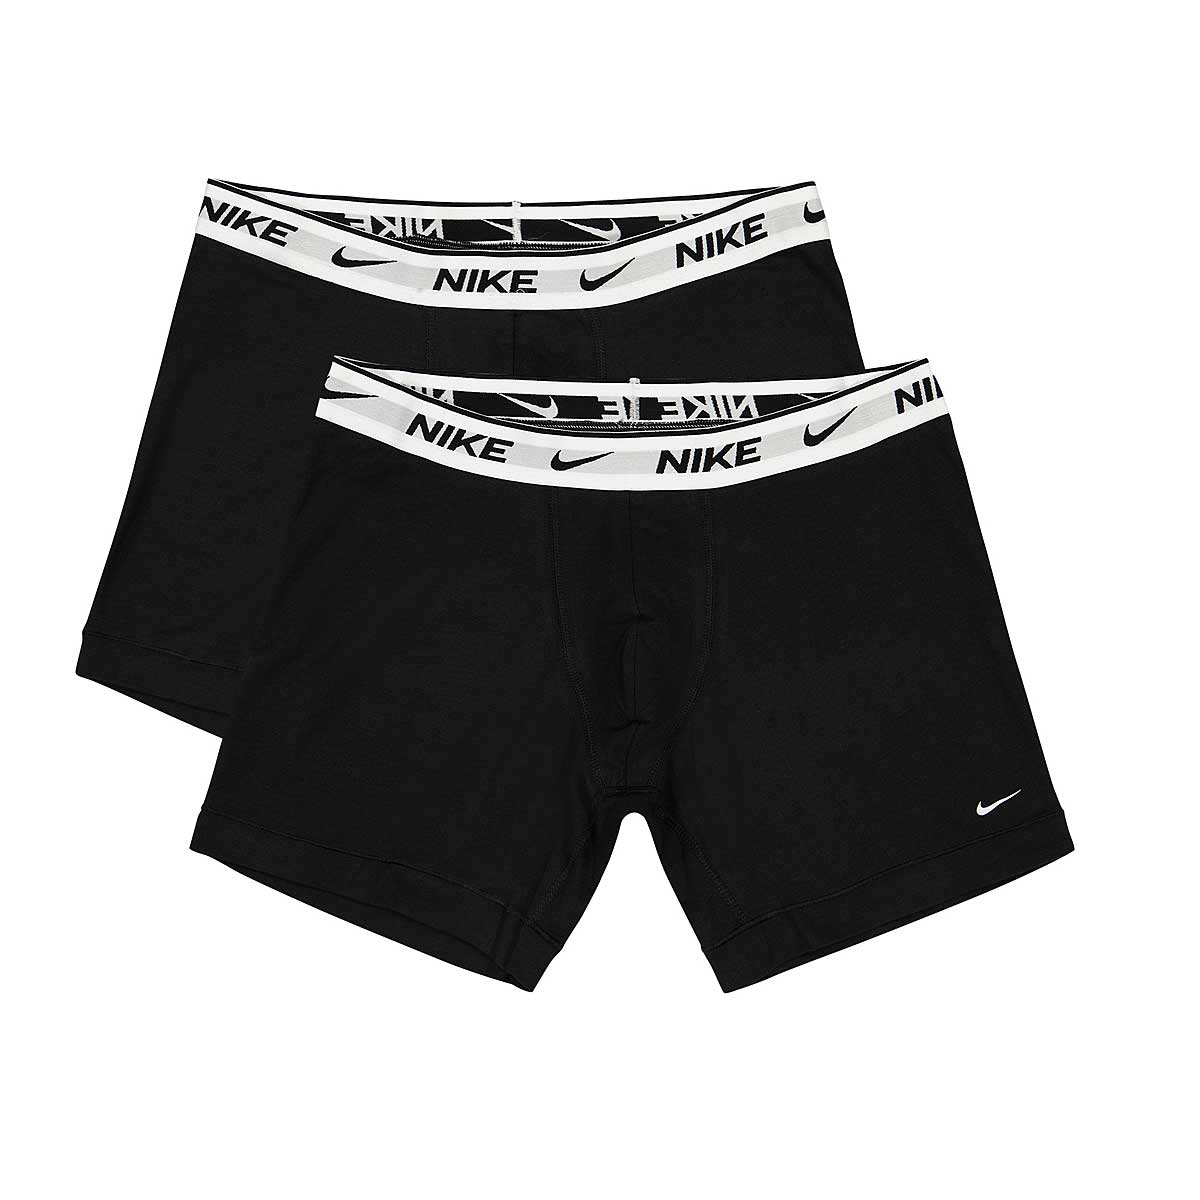 Nike Eday Cotton Stretch Boxer Briefs, Black/White